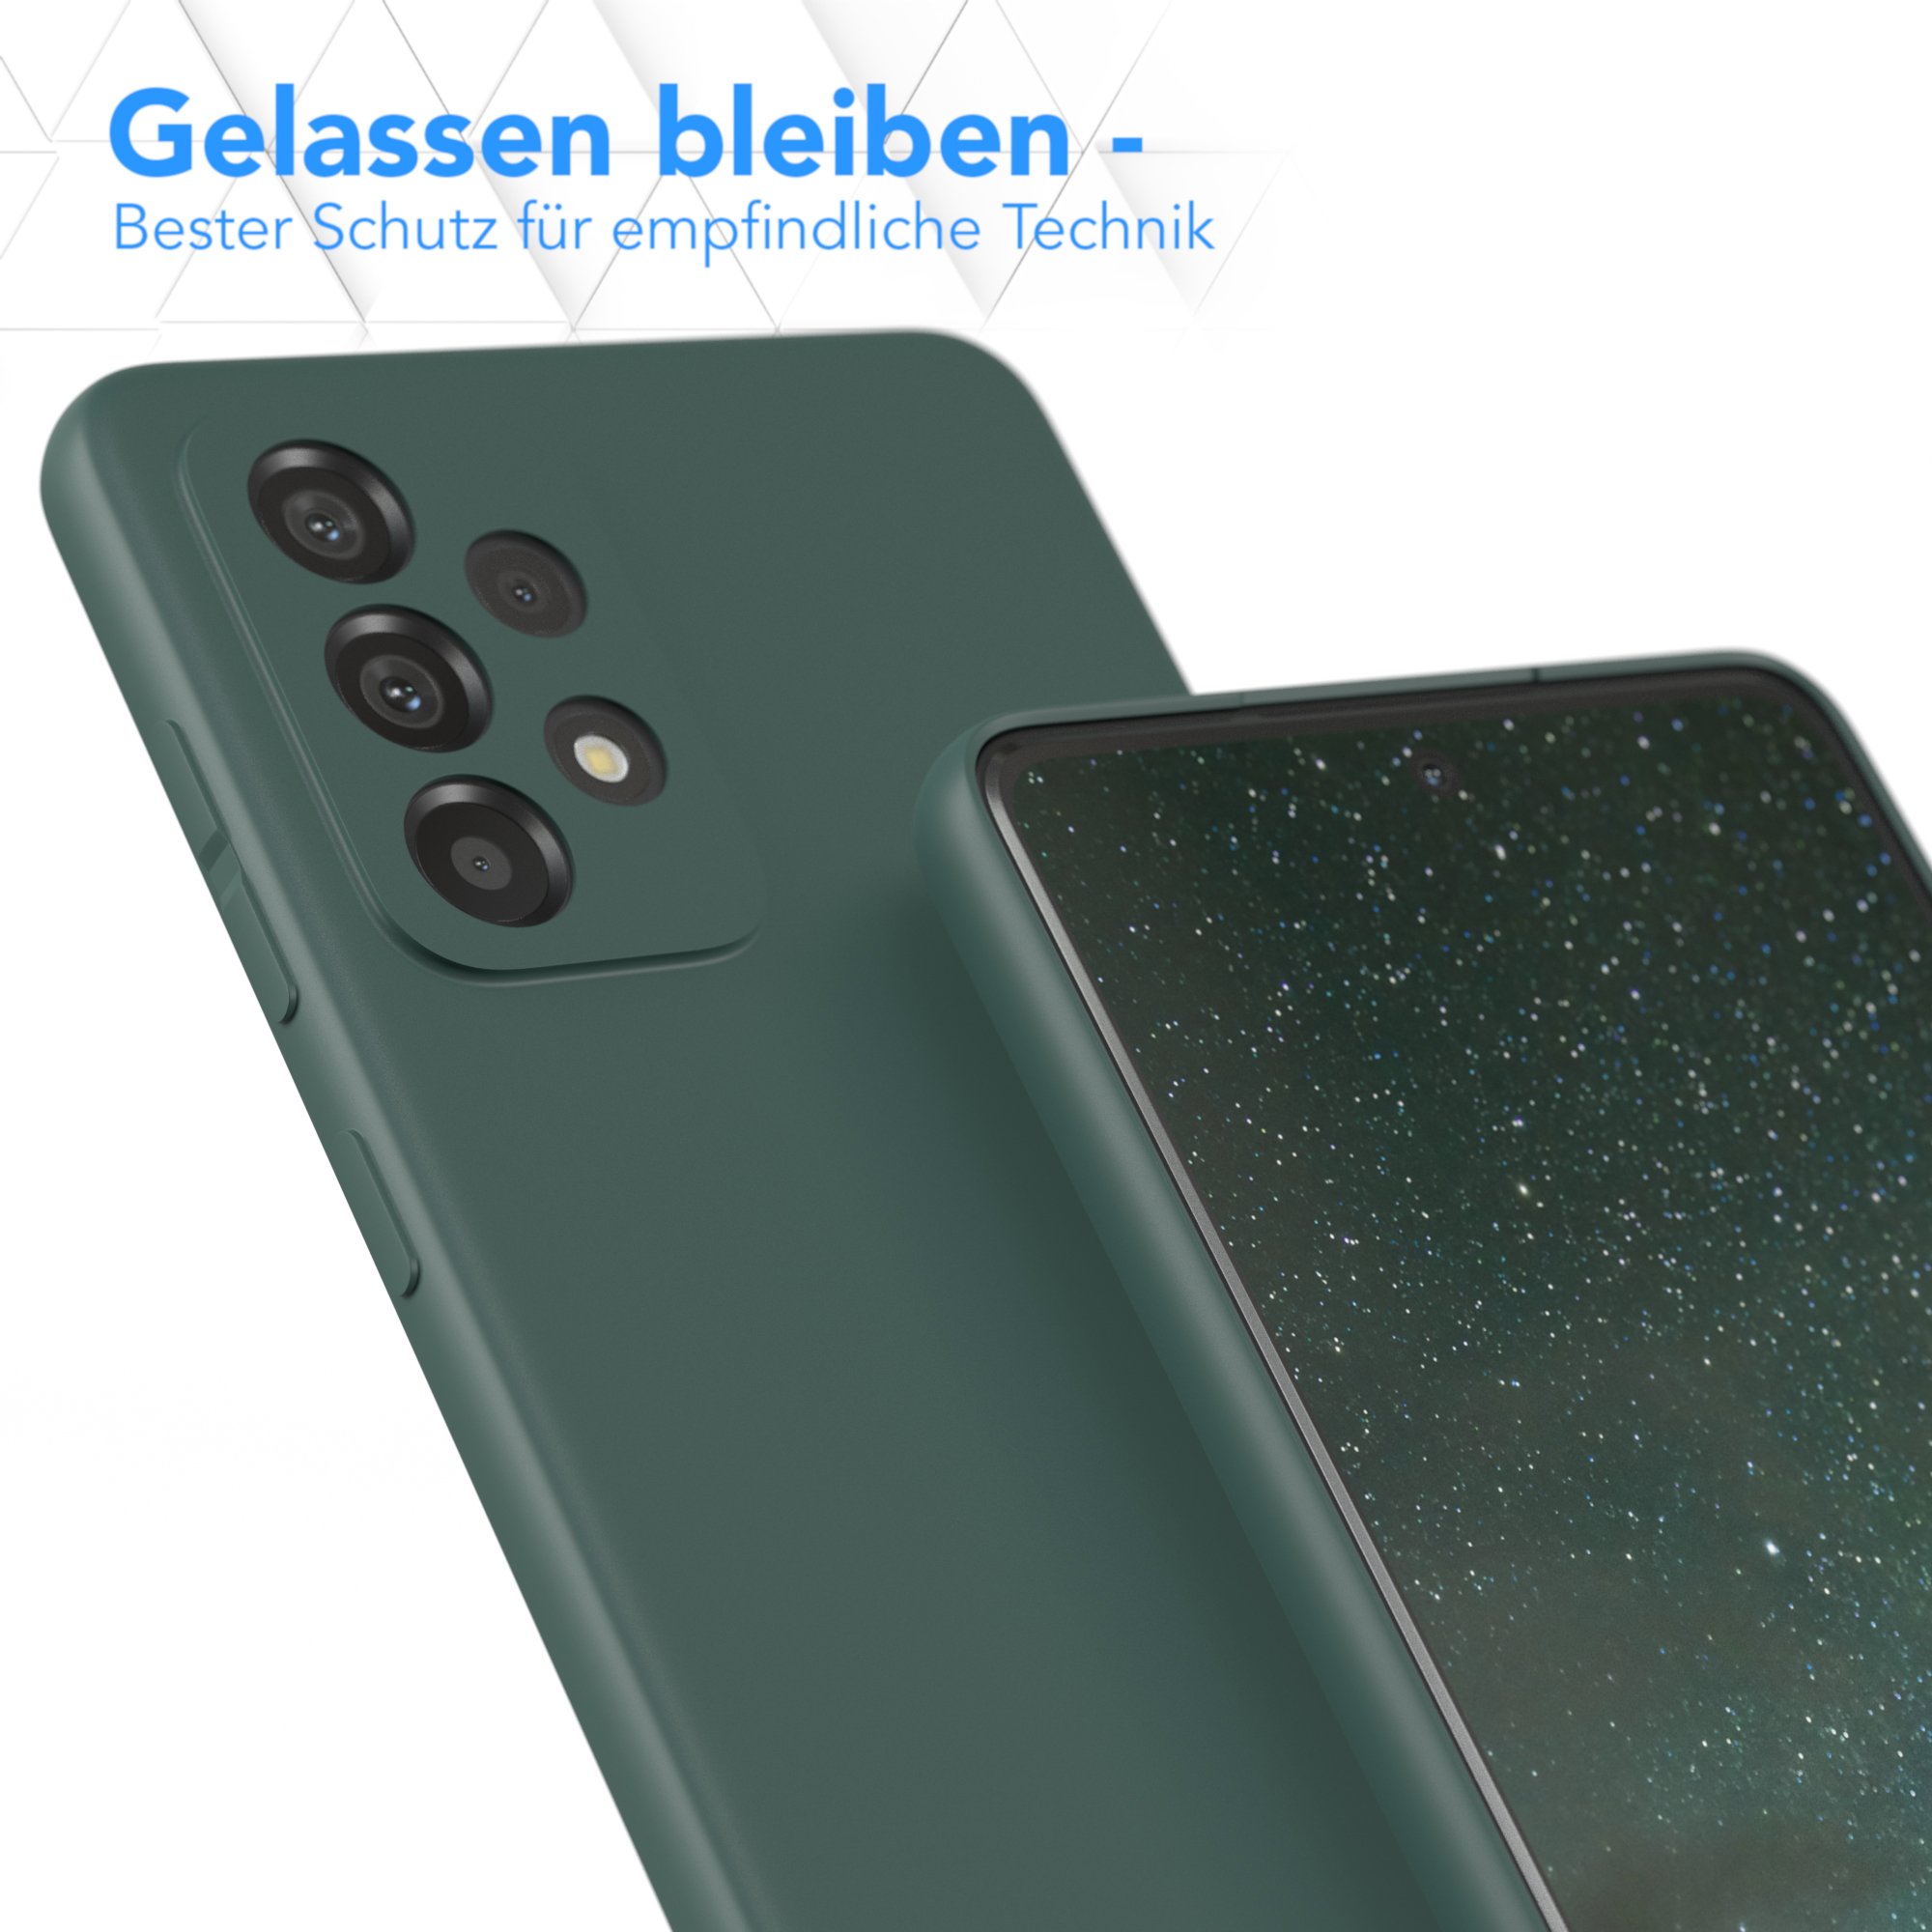 EAZY CASE TPU Silikon Galaxy / Nachtgrün Handycase Matt, 5G, A73 Backcover, Grün Samsung